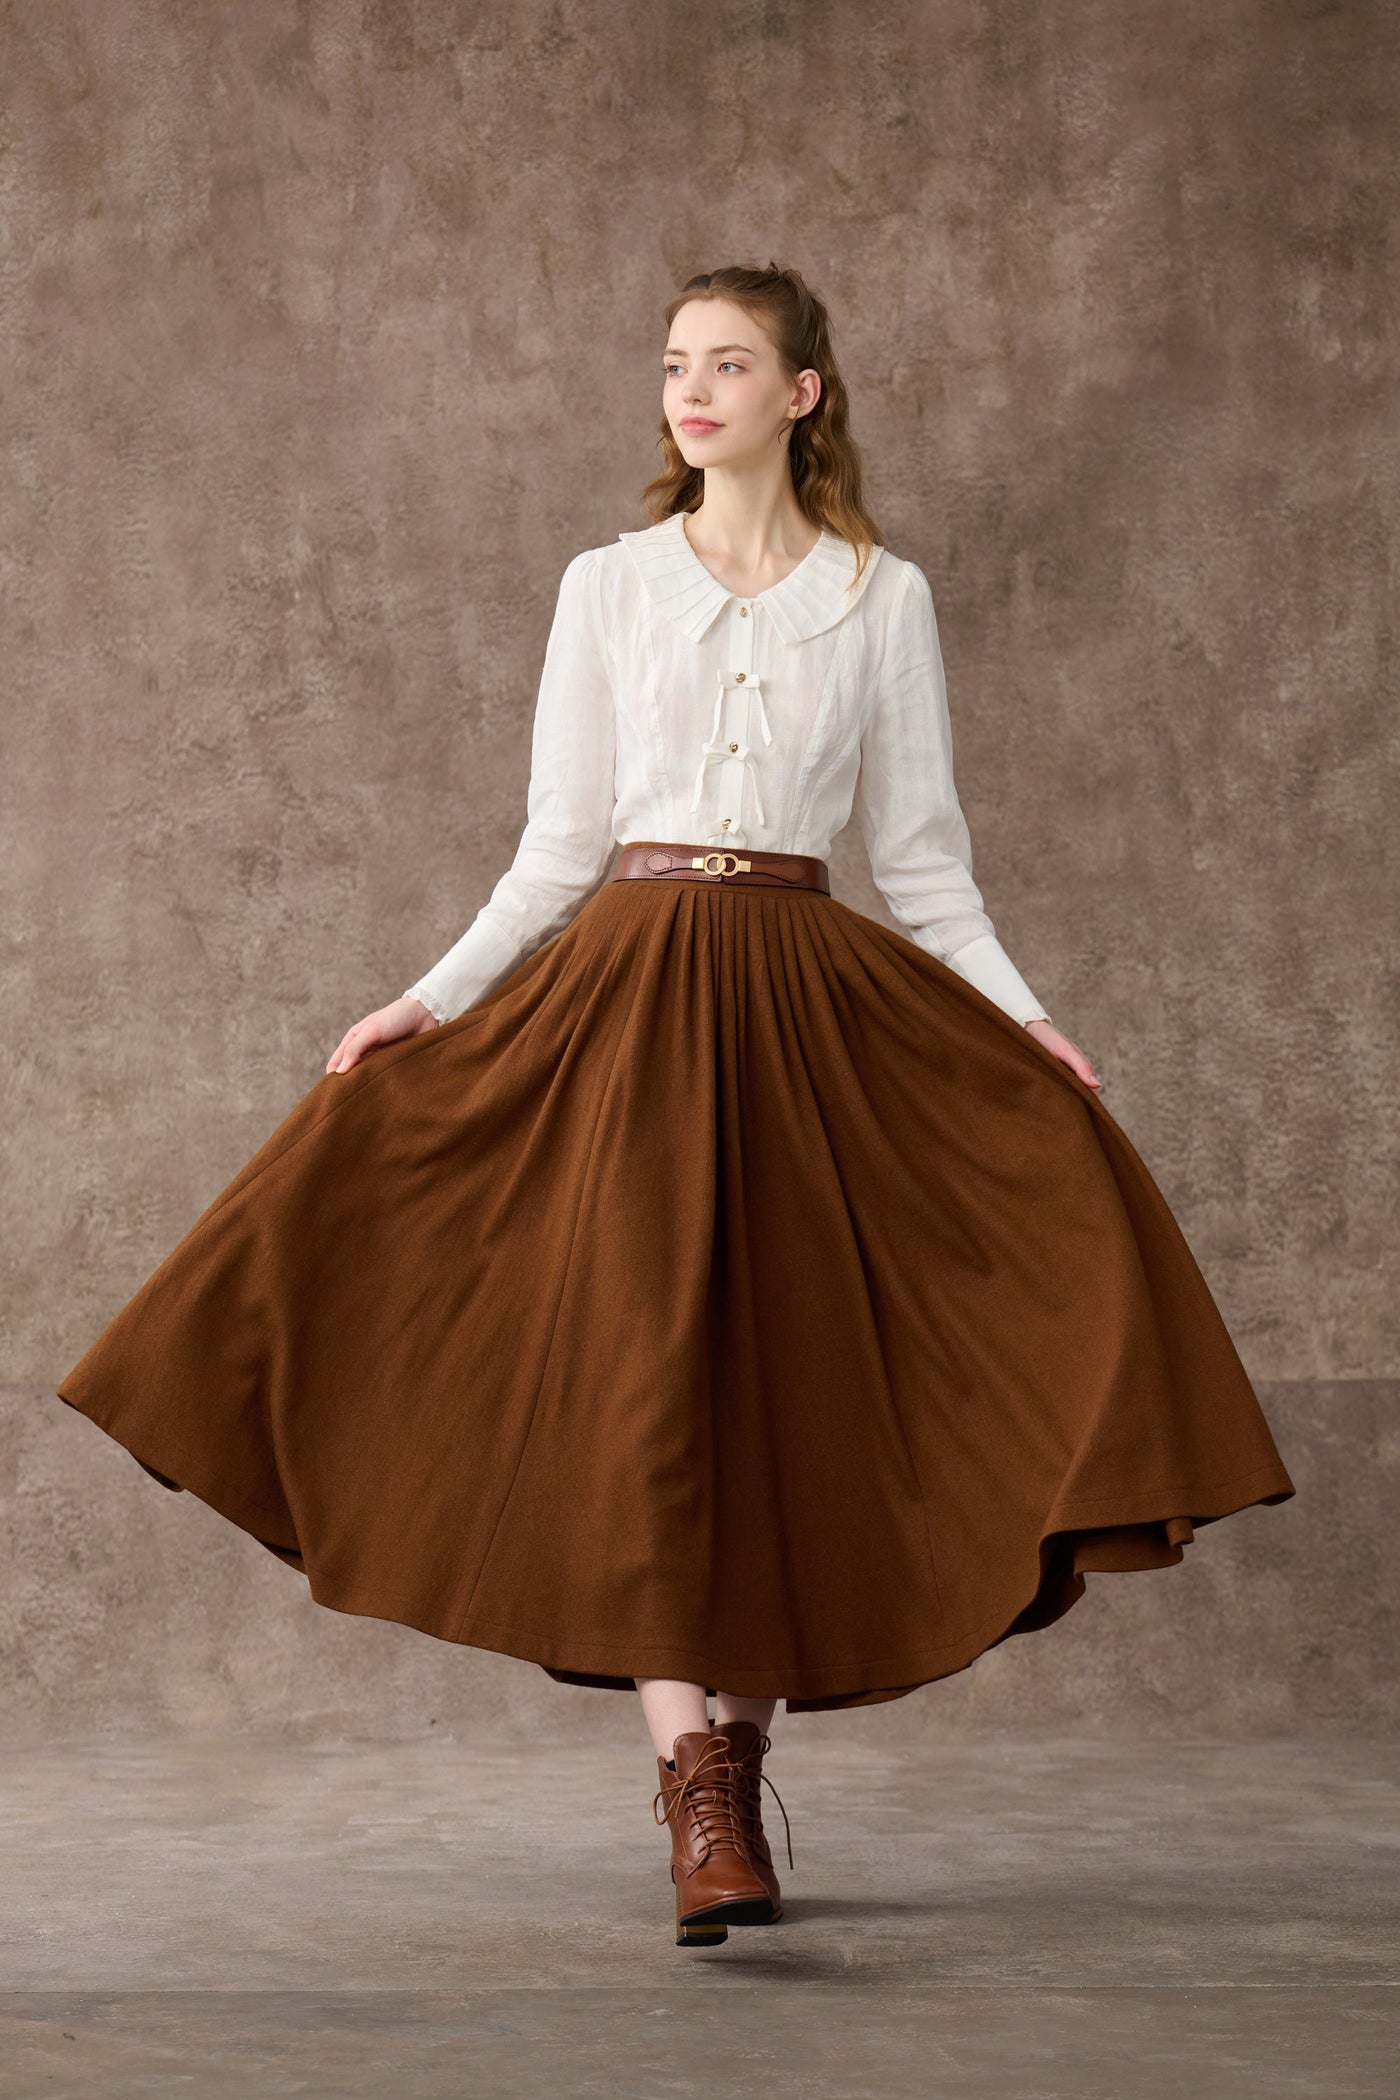 Future 4 | pleated wool skirt